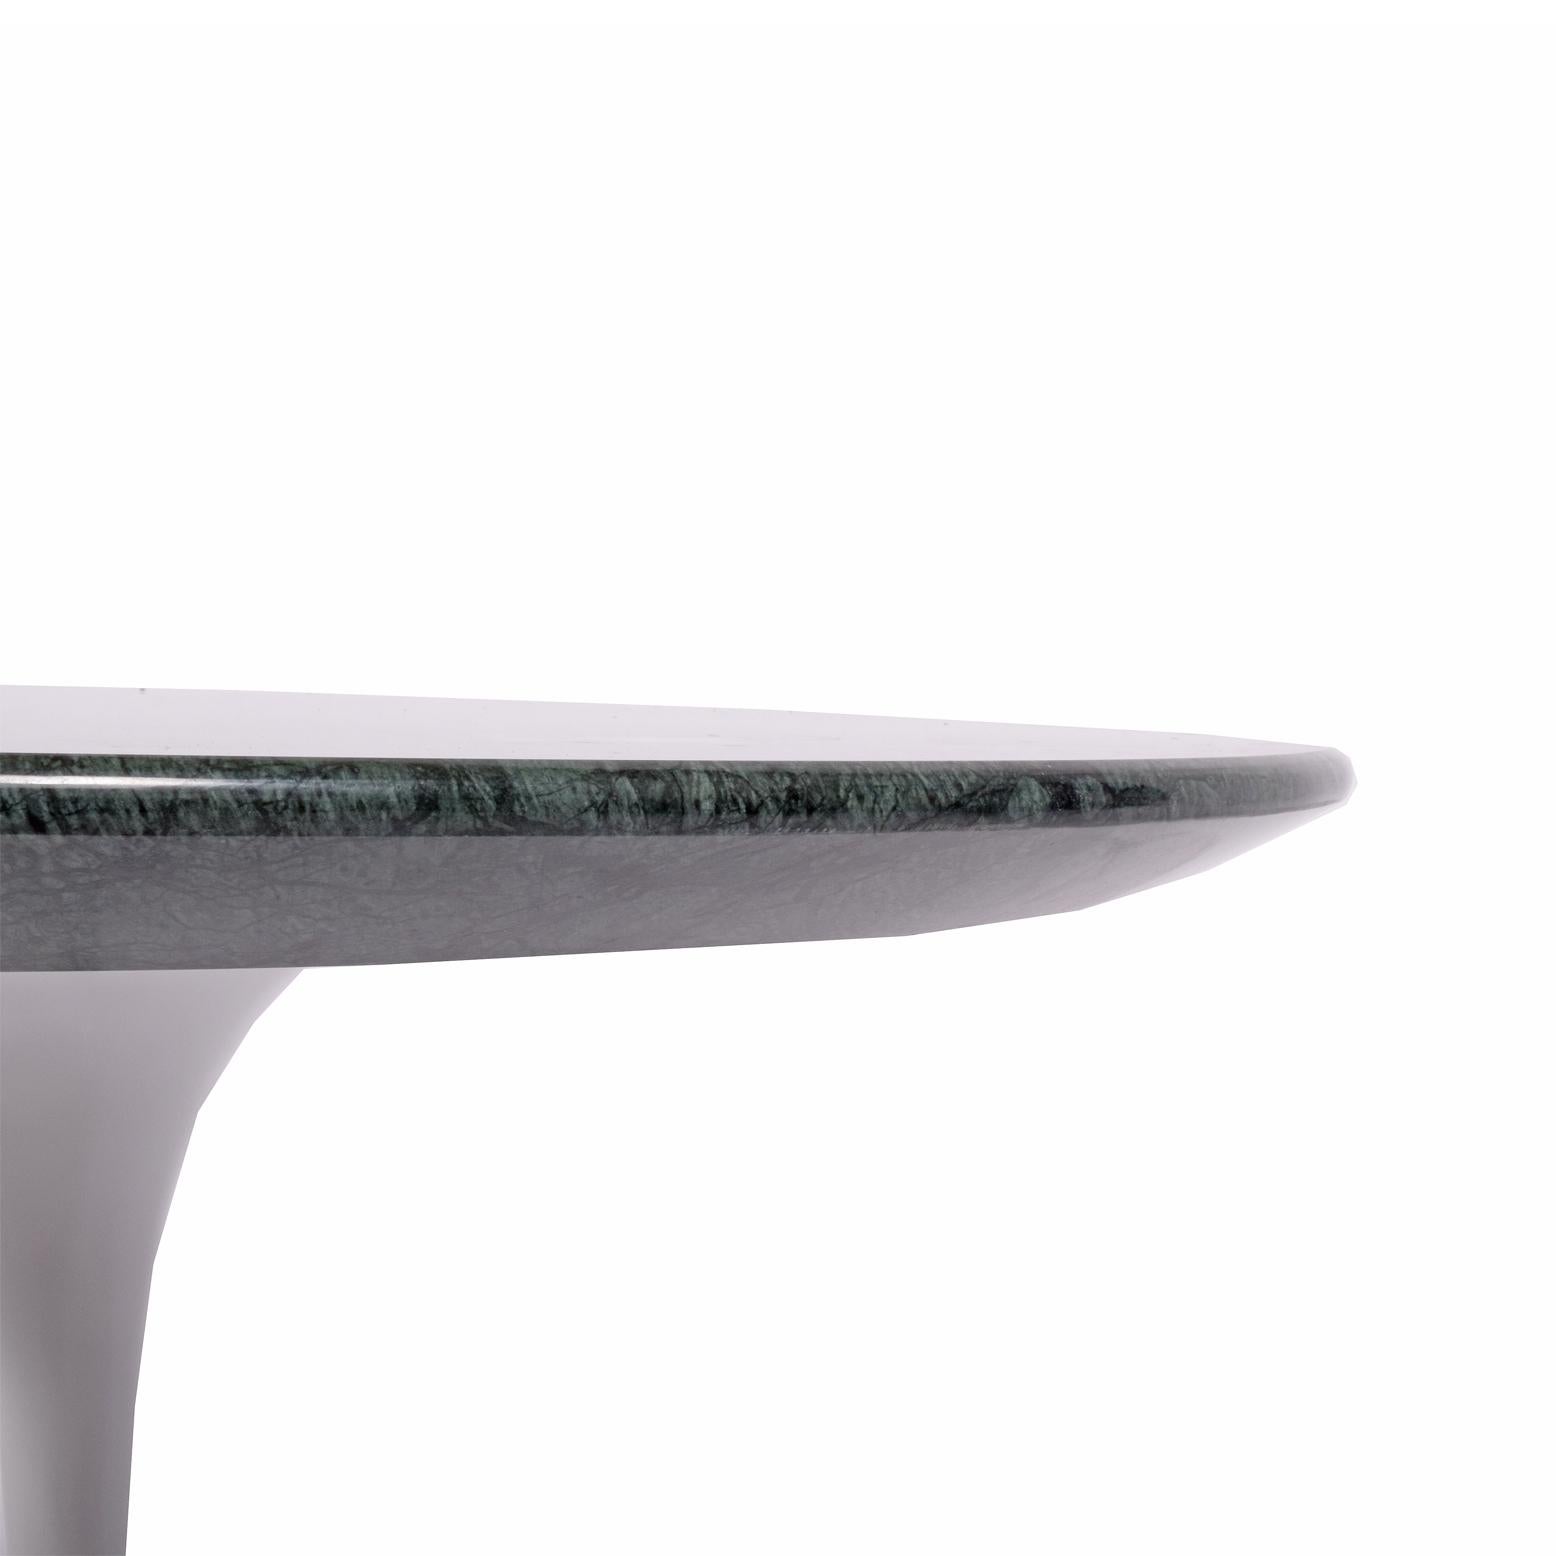 American Eero Saarinen Green Marble Side Table #163 F for Knoll